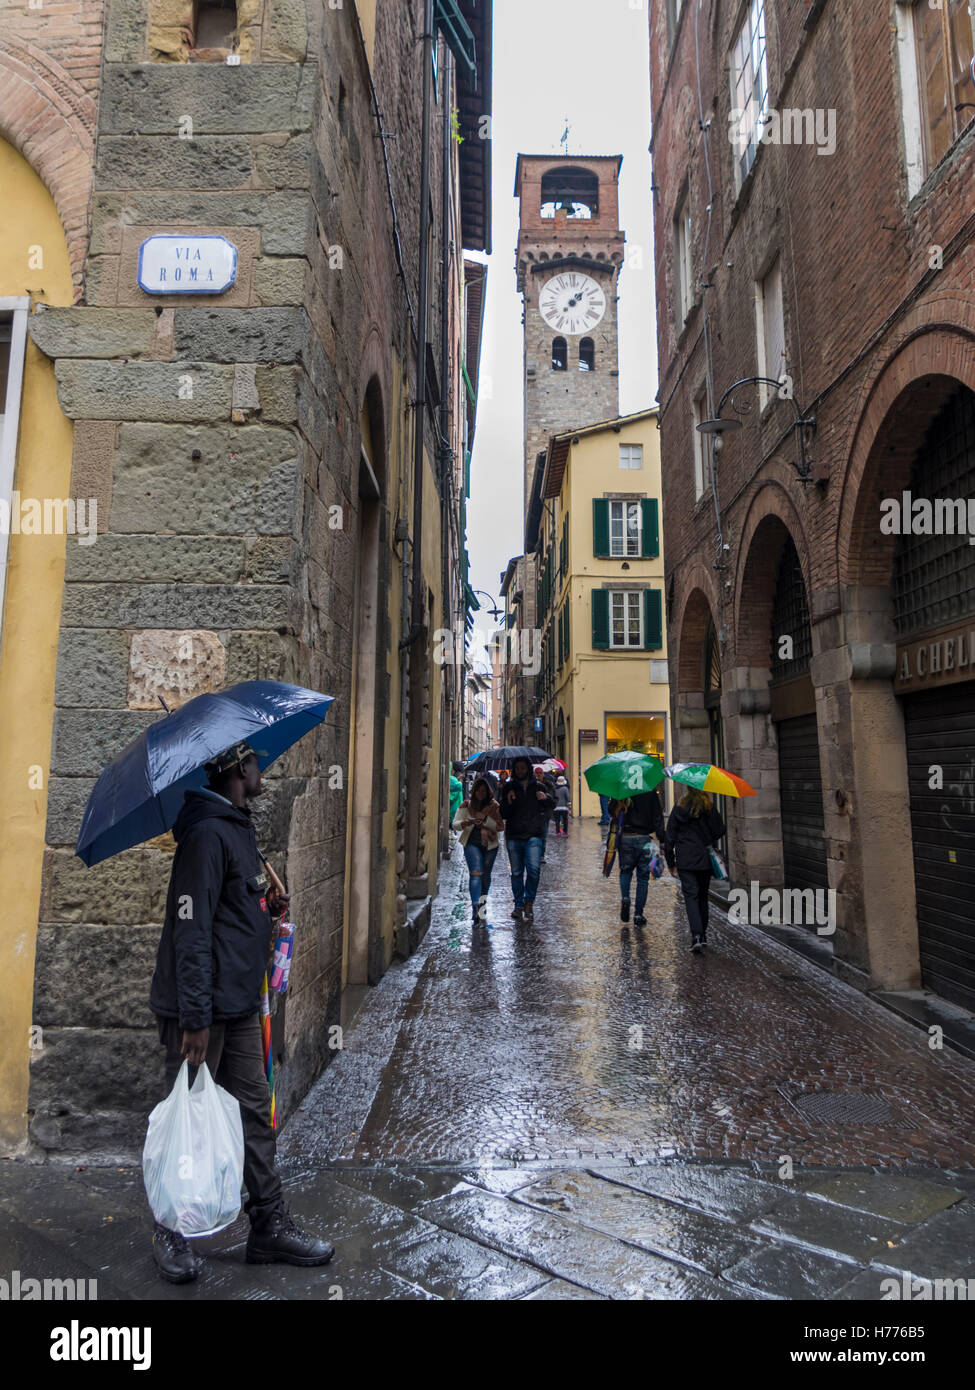 Menschen mit Regenschirmen in einer engen Straße in der Altstadt von Lucca, Toskana, Italien, an einem regnerischen Tag. Stockfoto